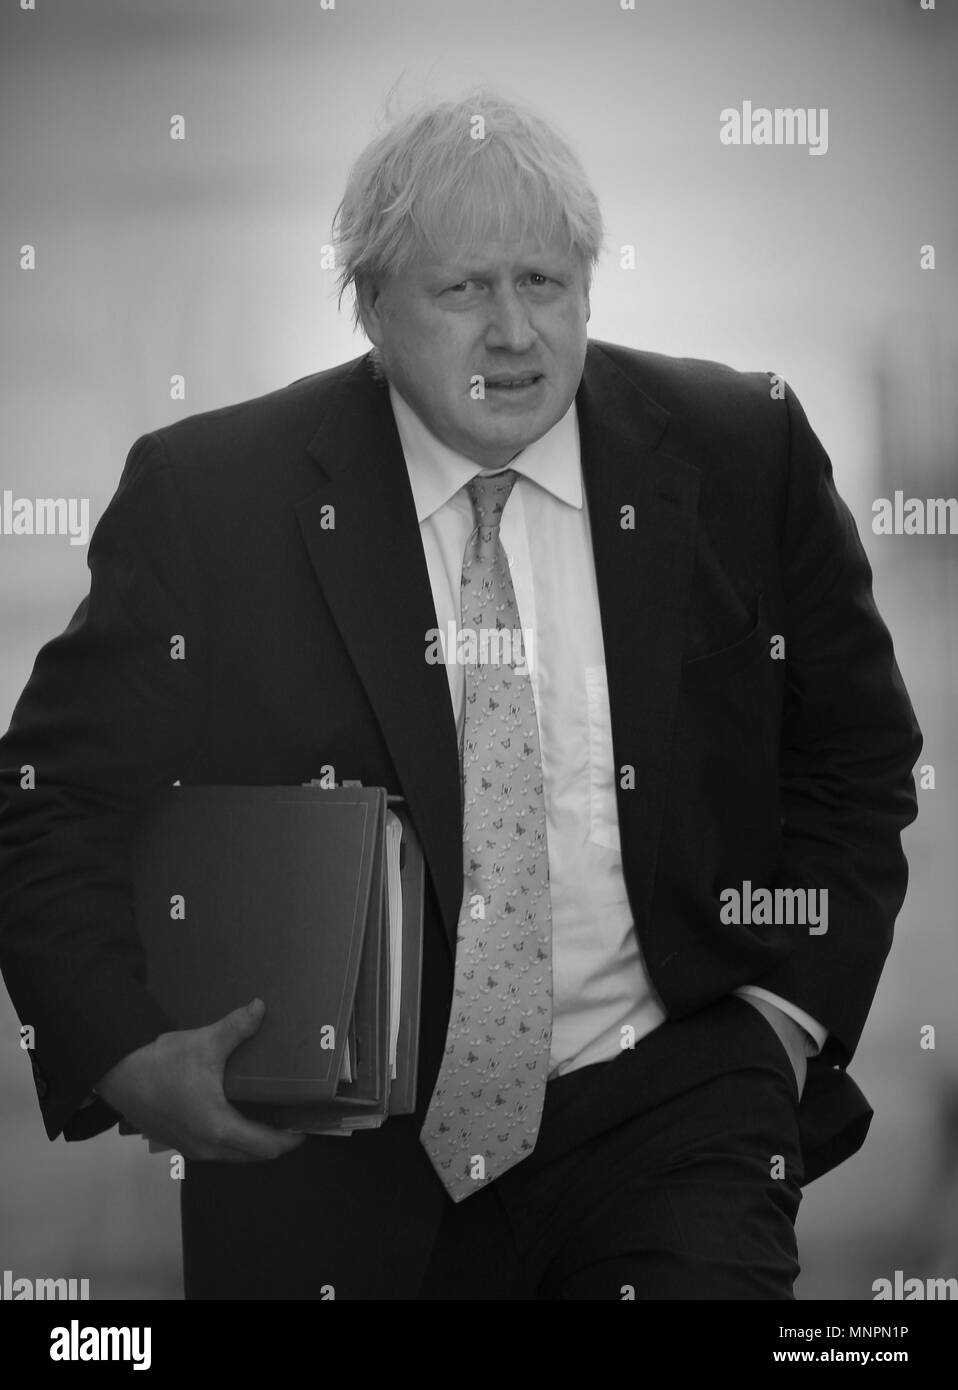 Londra - 15 Maggio 2018: ( Immagine Altered digitalmente a monocromatica ) Boris Johnson il Segretario di Stato per gli Affari Esteri visto arrving a Downing street Foto Stock